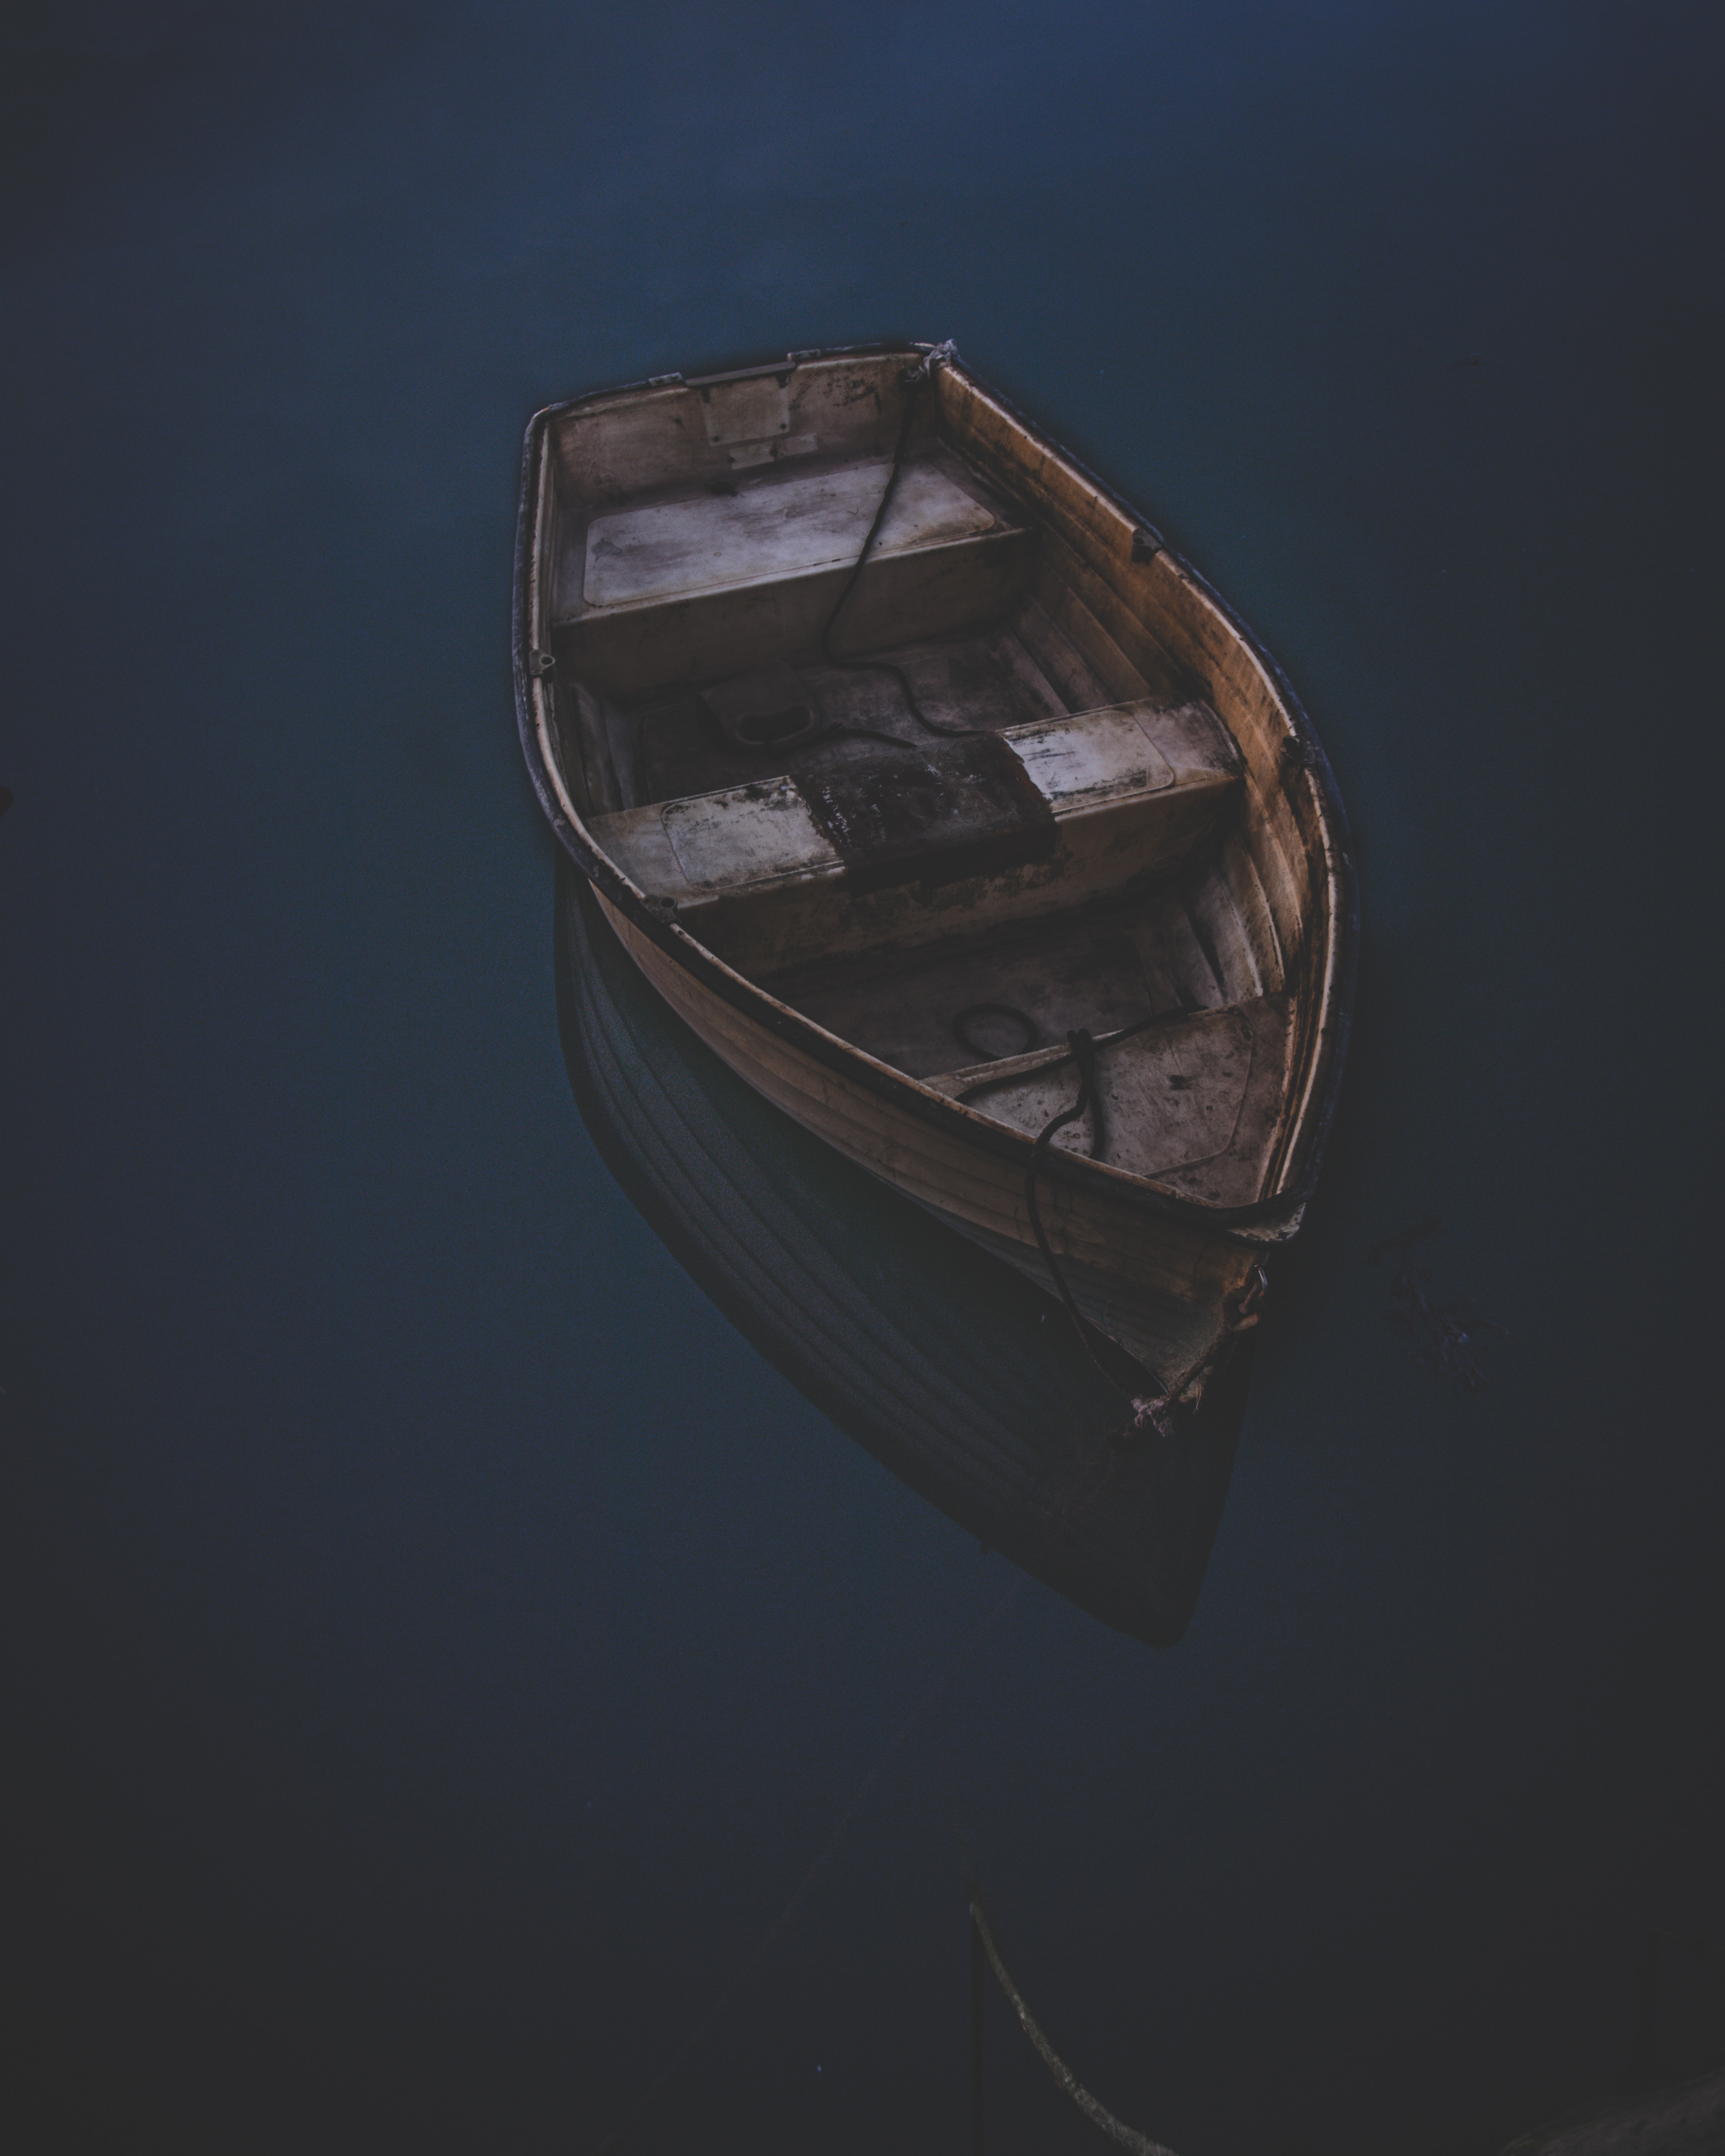 boat-body-of-water-canoe-2262800.jpg